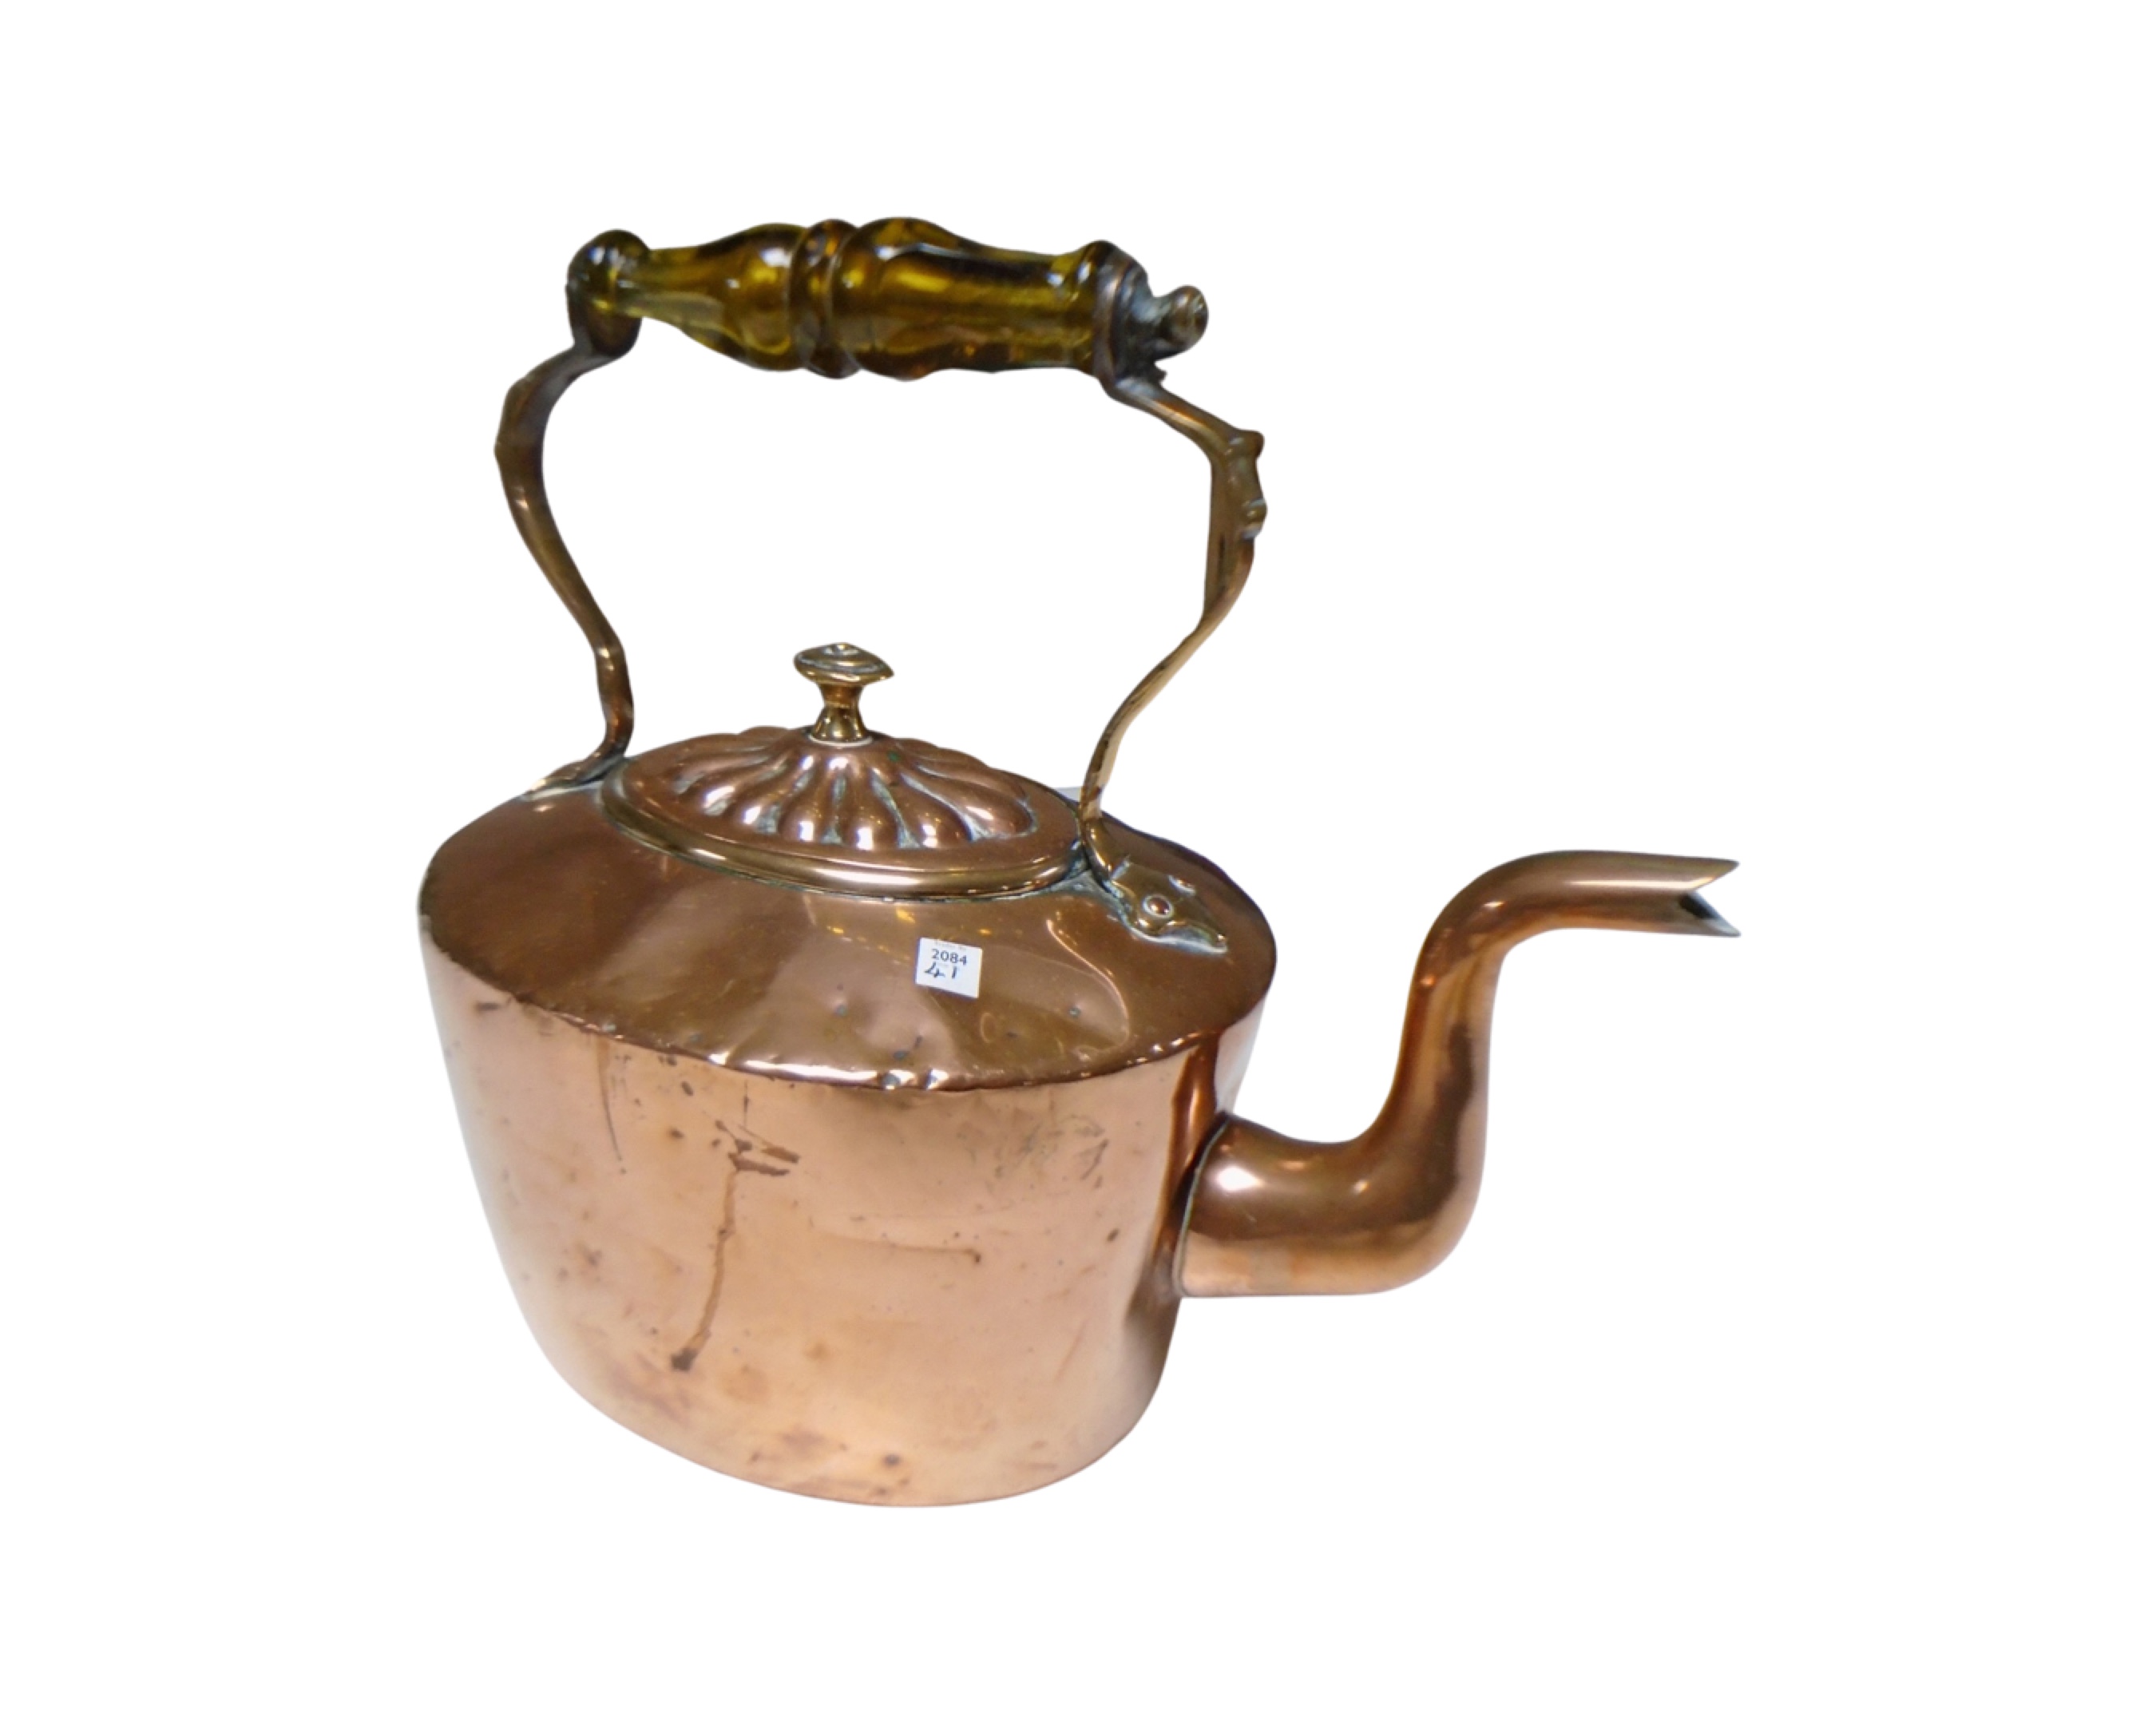 An antique copper kettle.